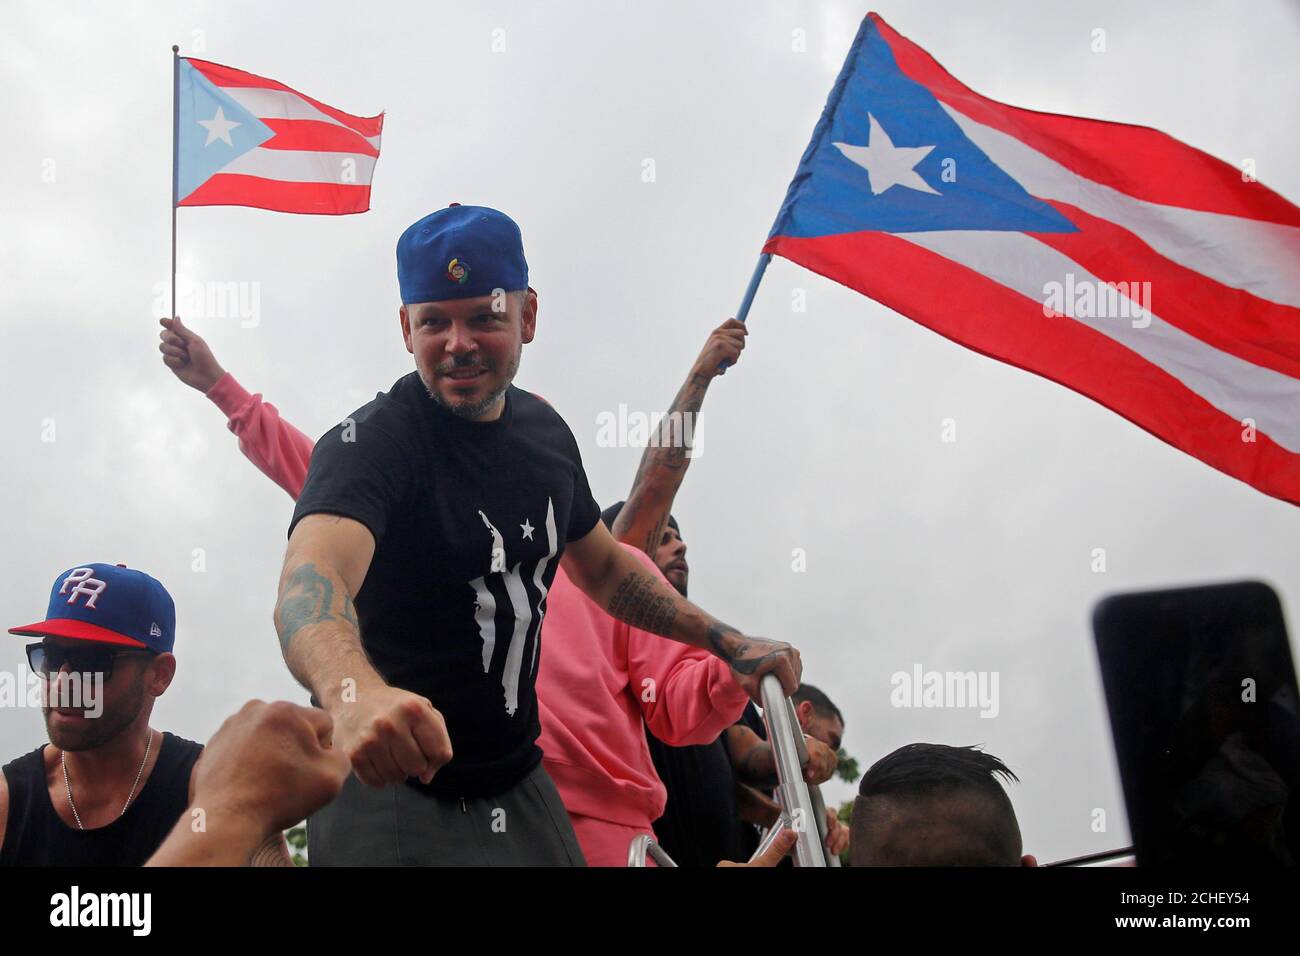 El rapero puertorriqueño Residente, cuyo nombre es Rene Pérez, golpea a un  fan durante una manifestación para celebrar la renuncia del gobernador  puertorriqueño Ricardo Rosselló en San Juan, Puerto Rico el 25